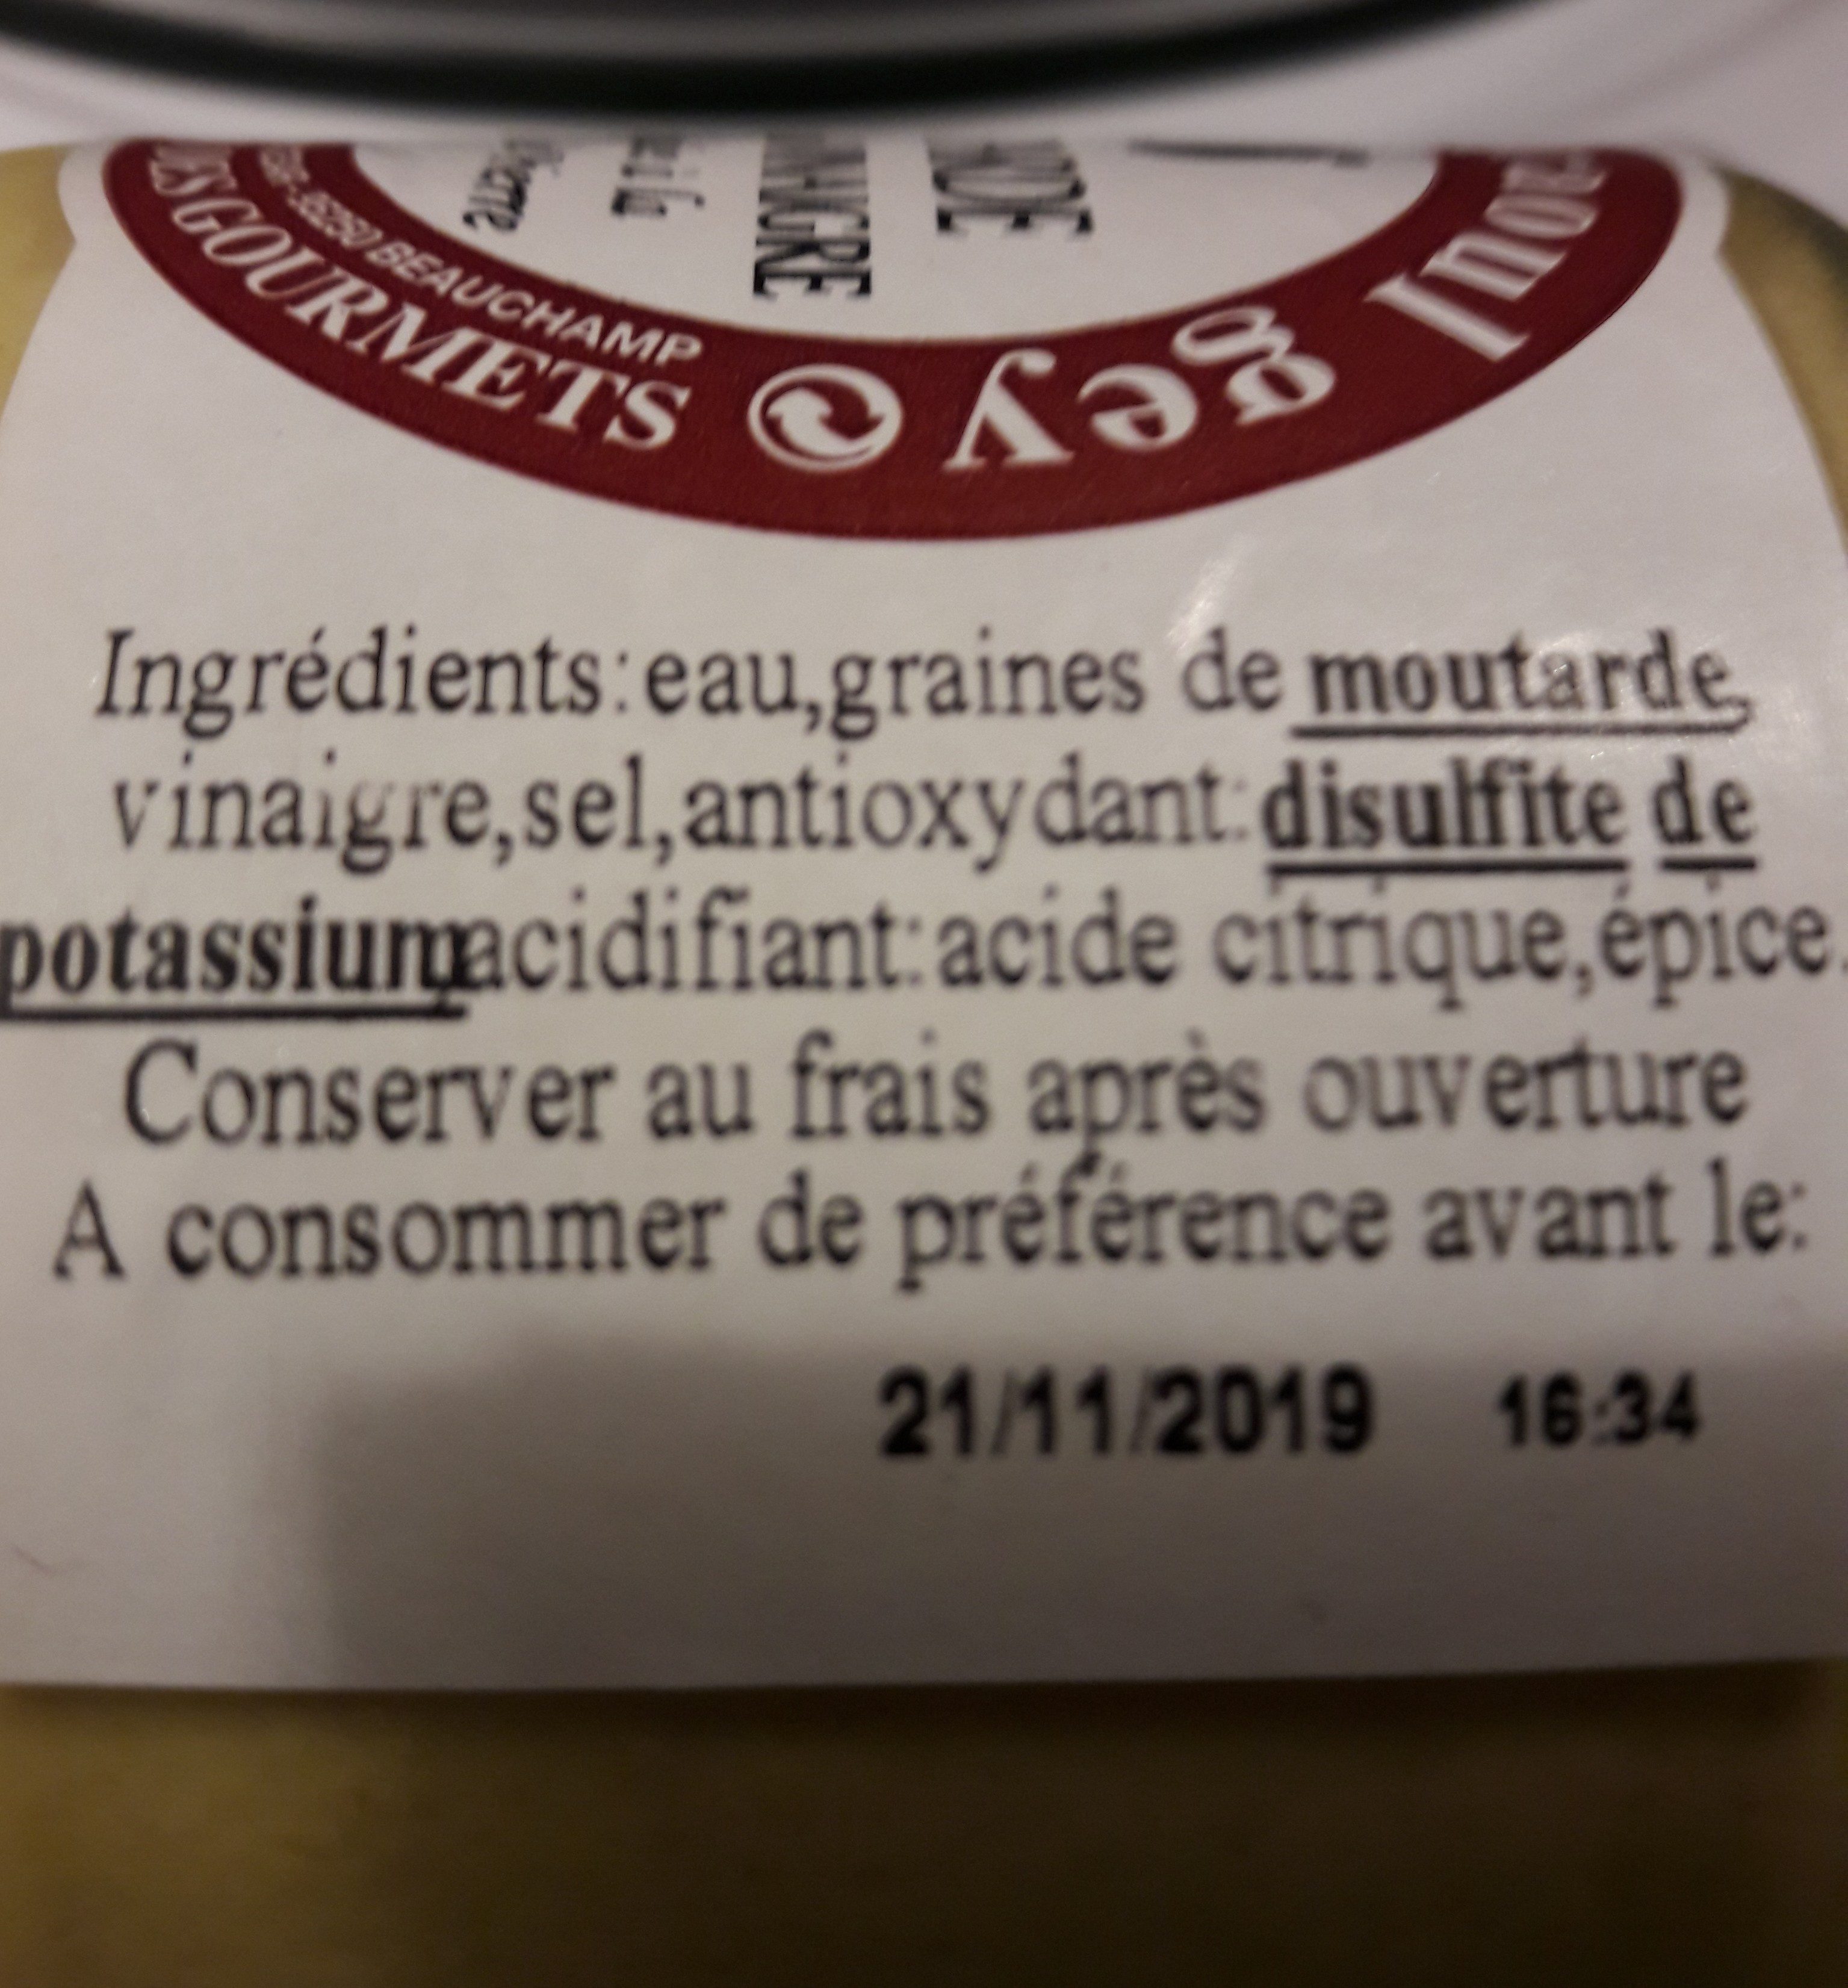 Moutarde de Dijon au vinaigre - Ingredients - fr